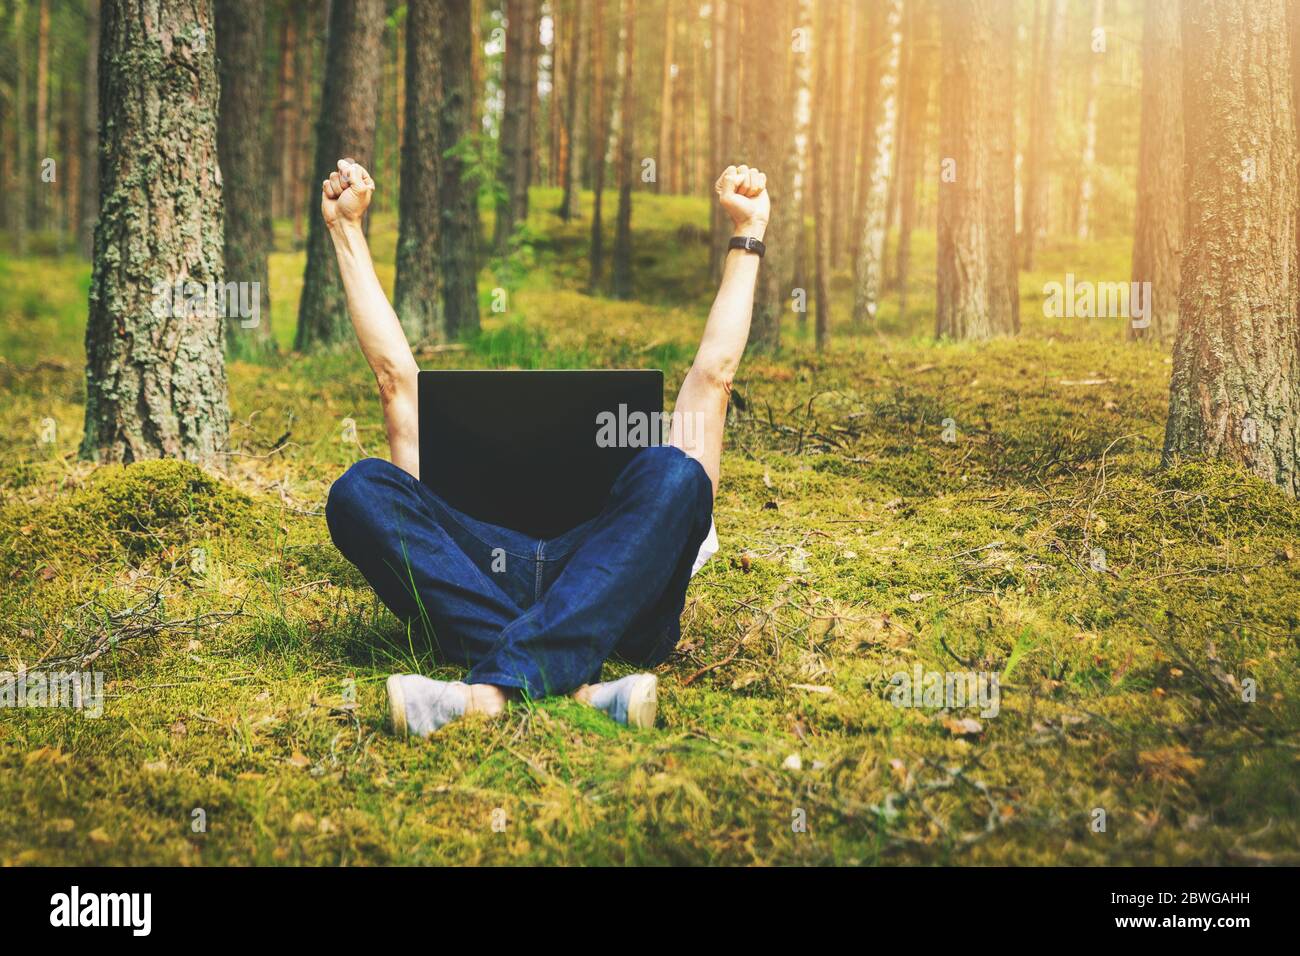 teletrabajo - hombre con portátil tumbado en el musgo en el bosque con las manos levantadas Foto de stock